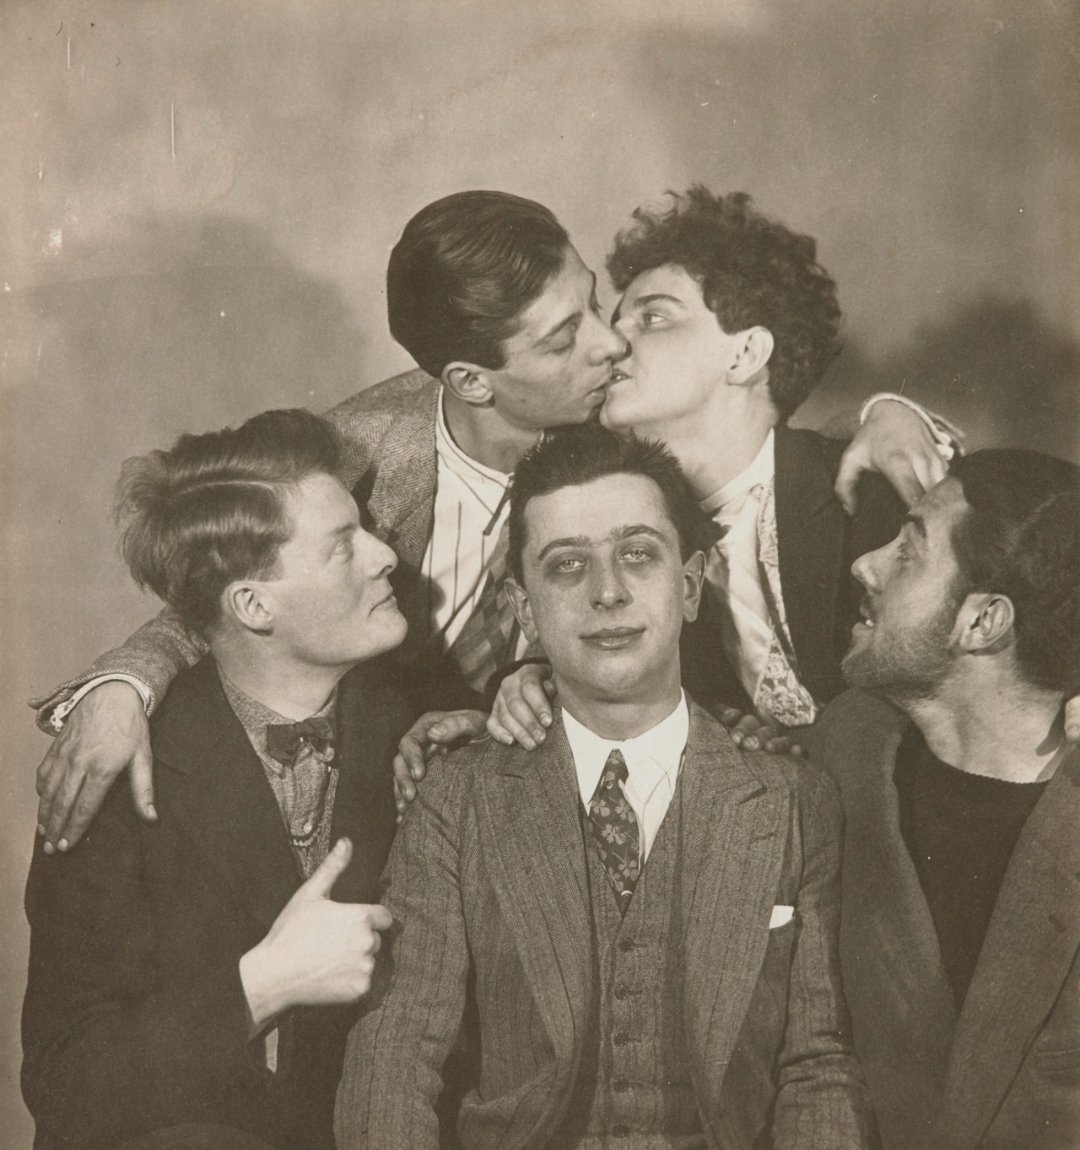 Man Ray, 'Groupe Surréaliste', circa 1924-25